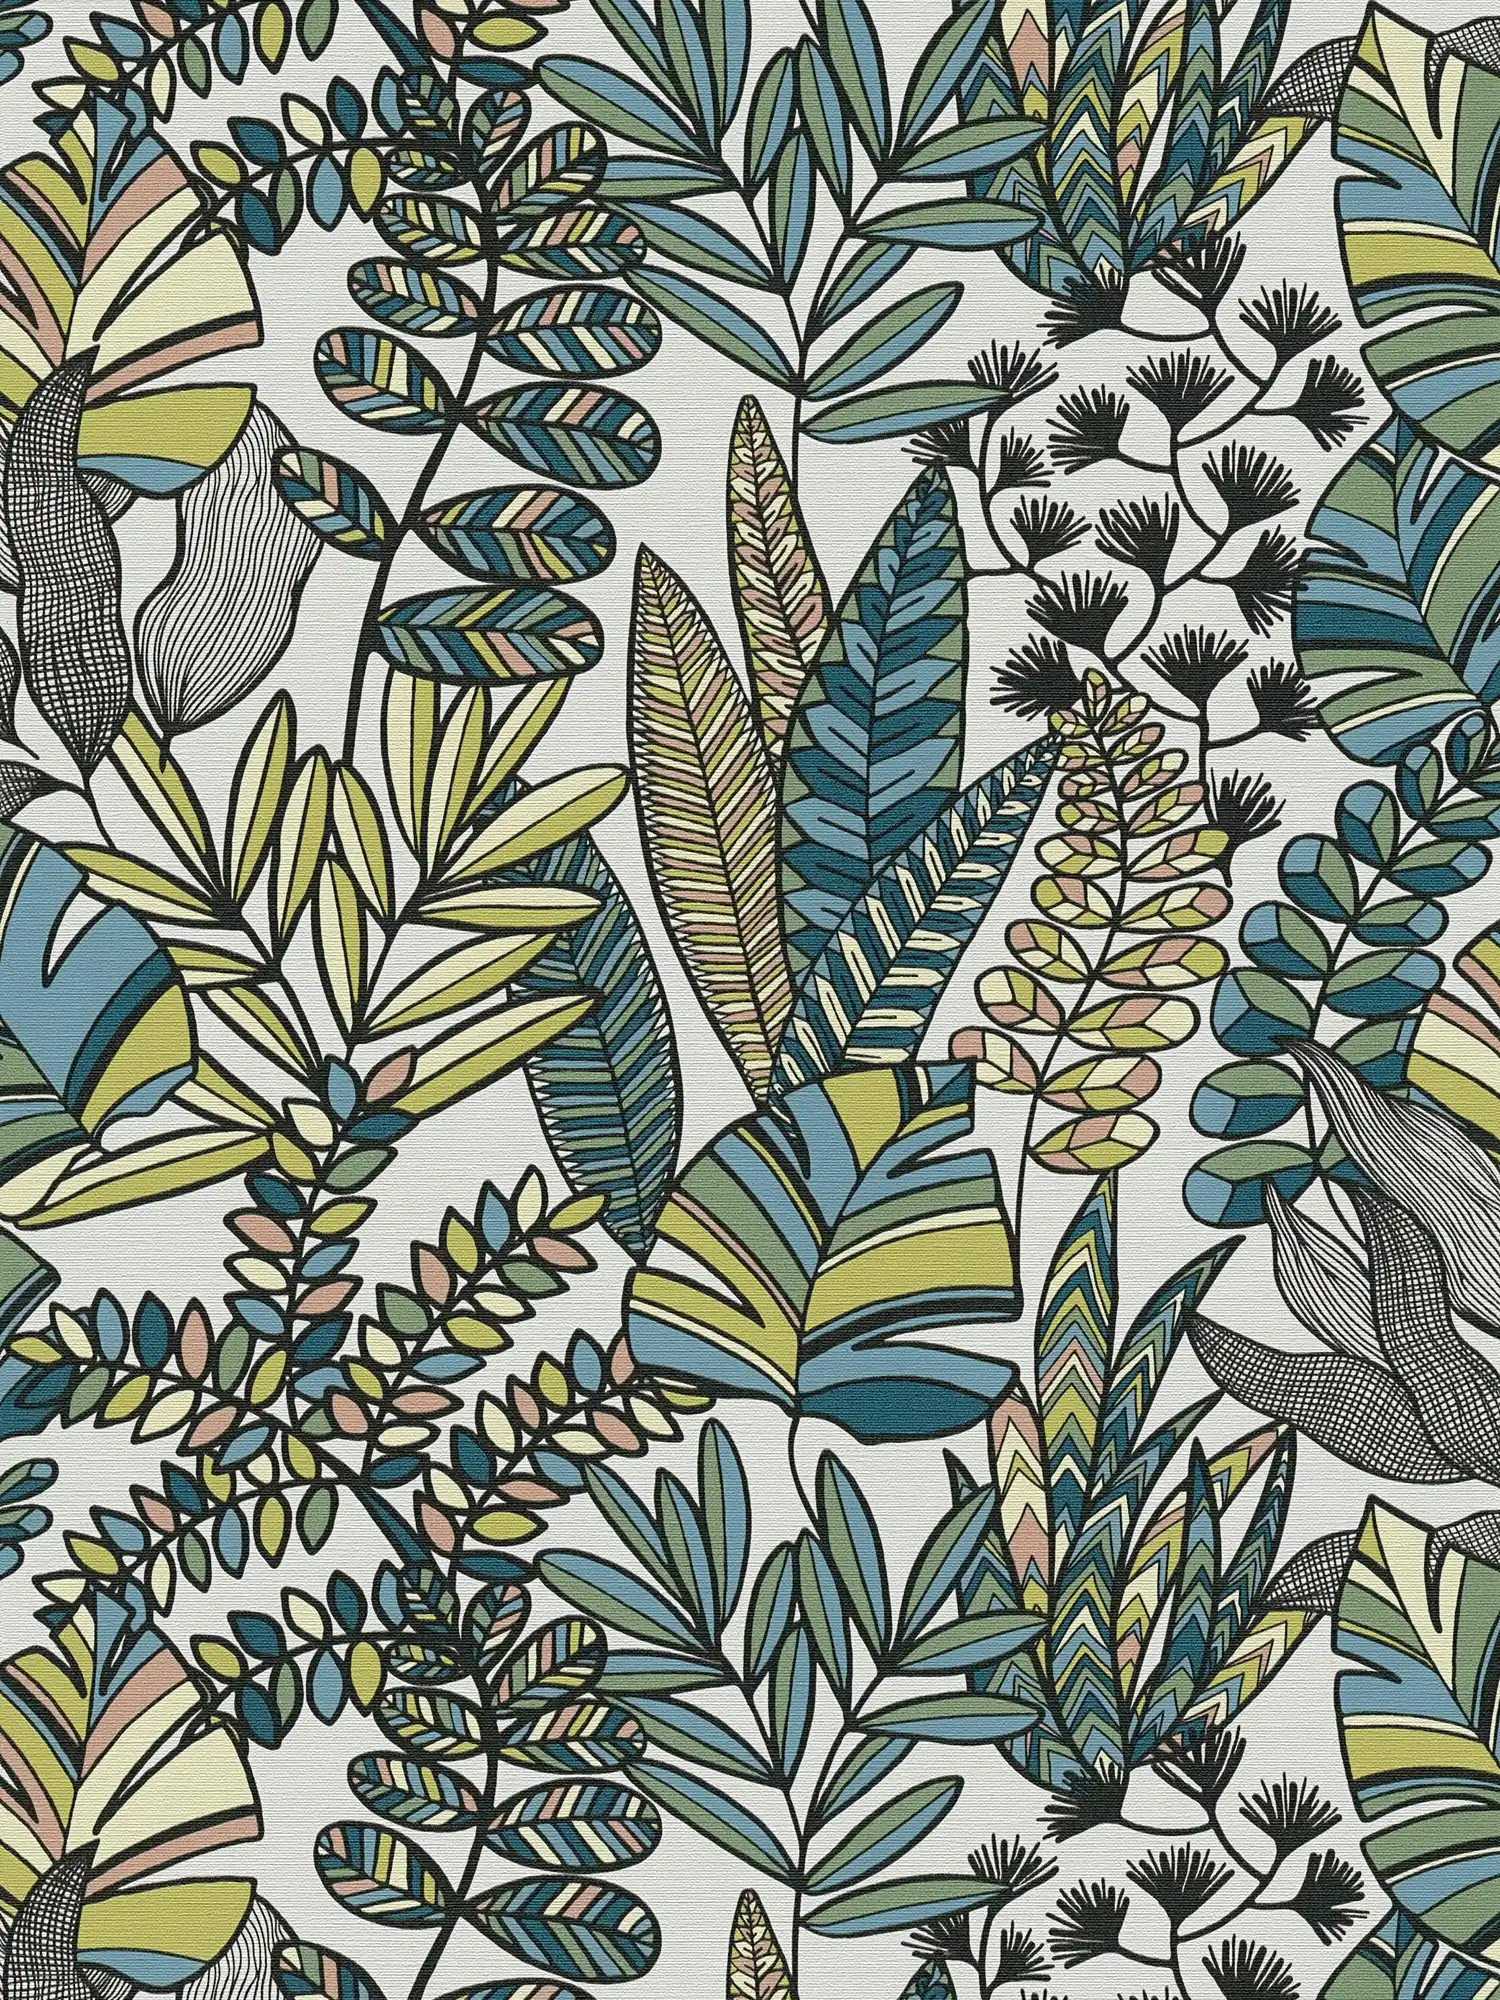 Vliestapete mit großen Blättern in kräftigen Farben – Weiß, Schwarz, Blau
